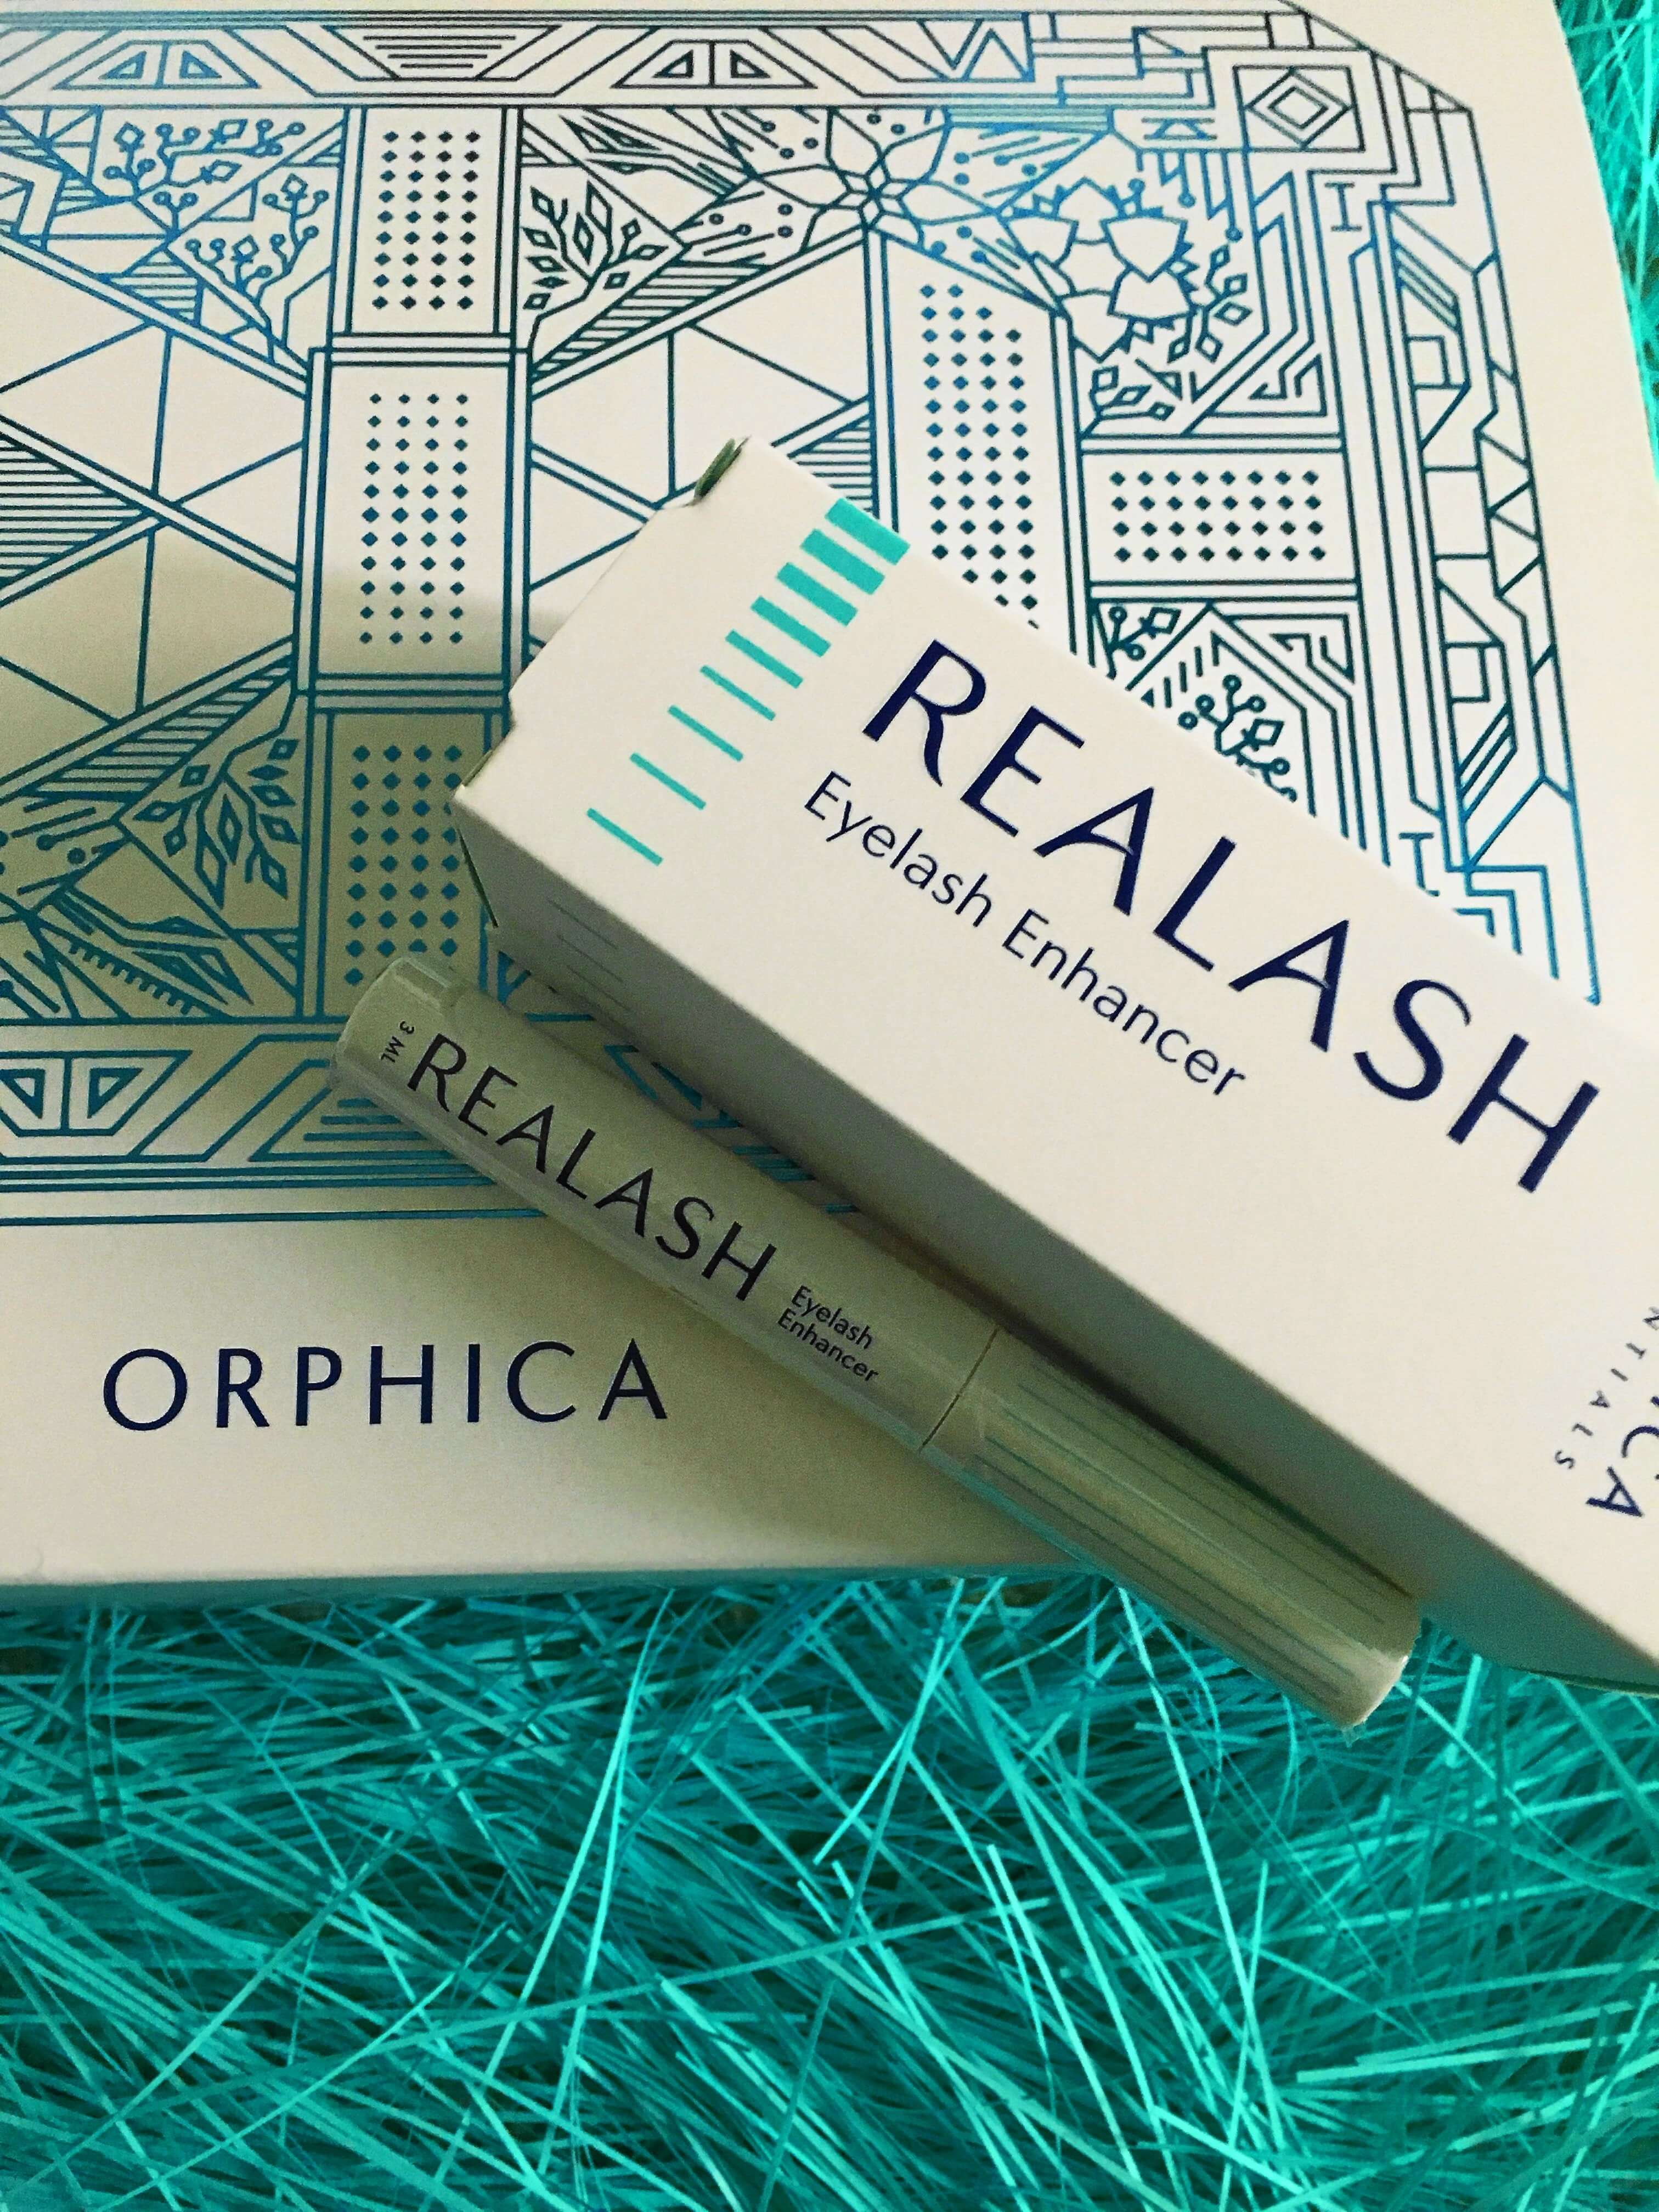 Heute zeige ich euch auf dem Blog das effektive Wimpernserum REALASH von Orphica, das für traumhafte dichte und lange Naturwimpern im Handumdrehen sorgt